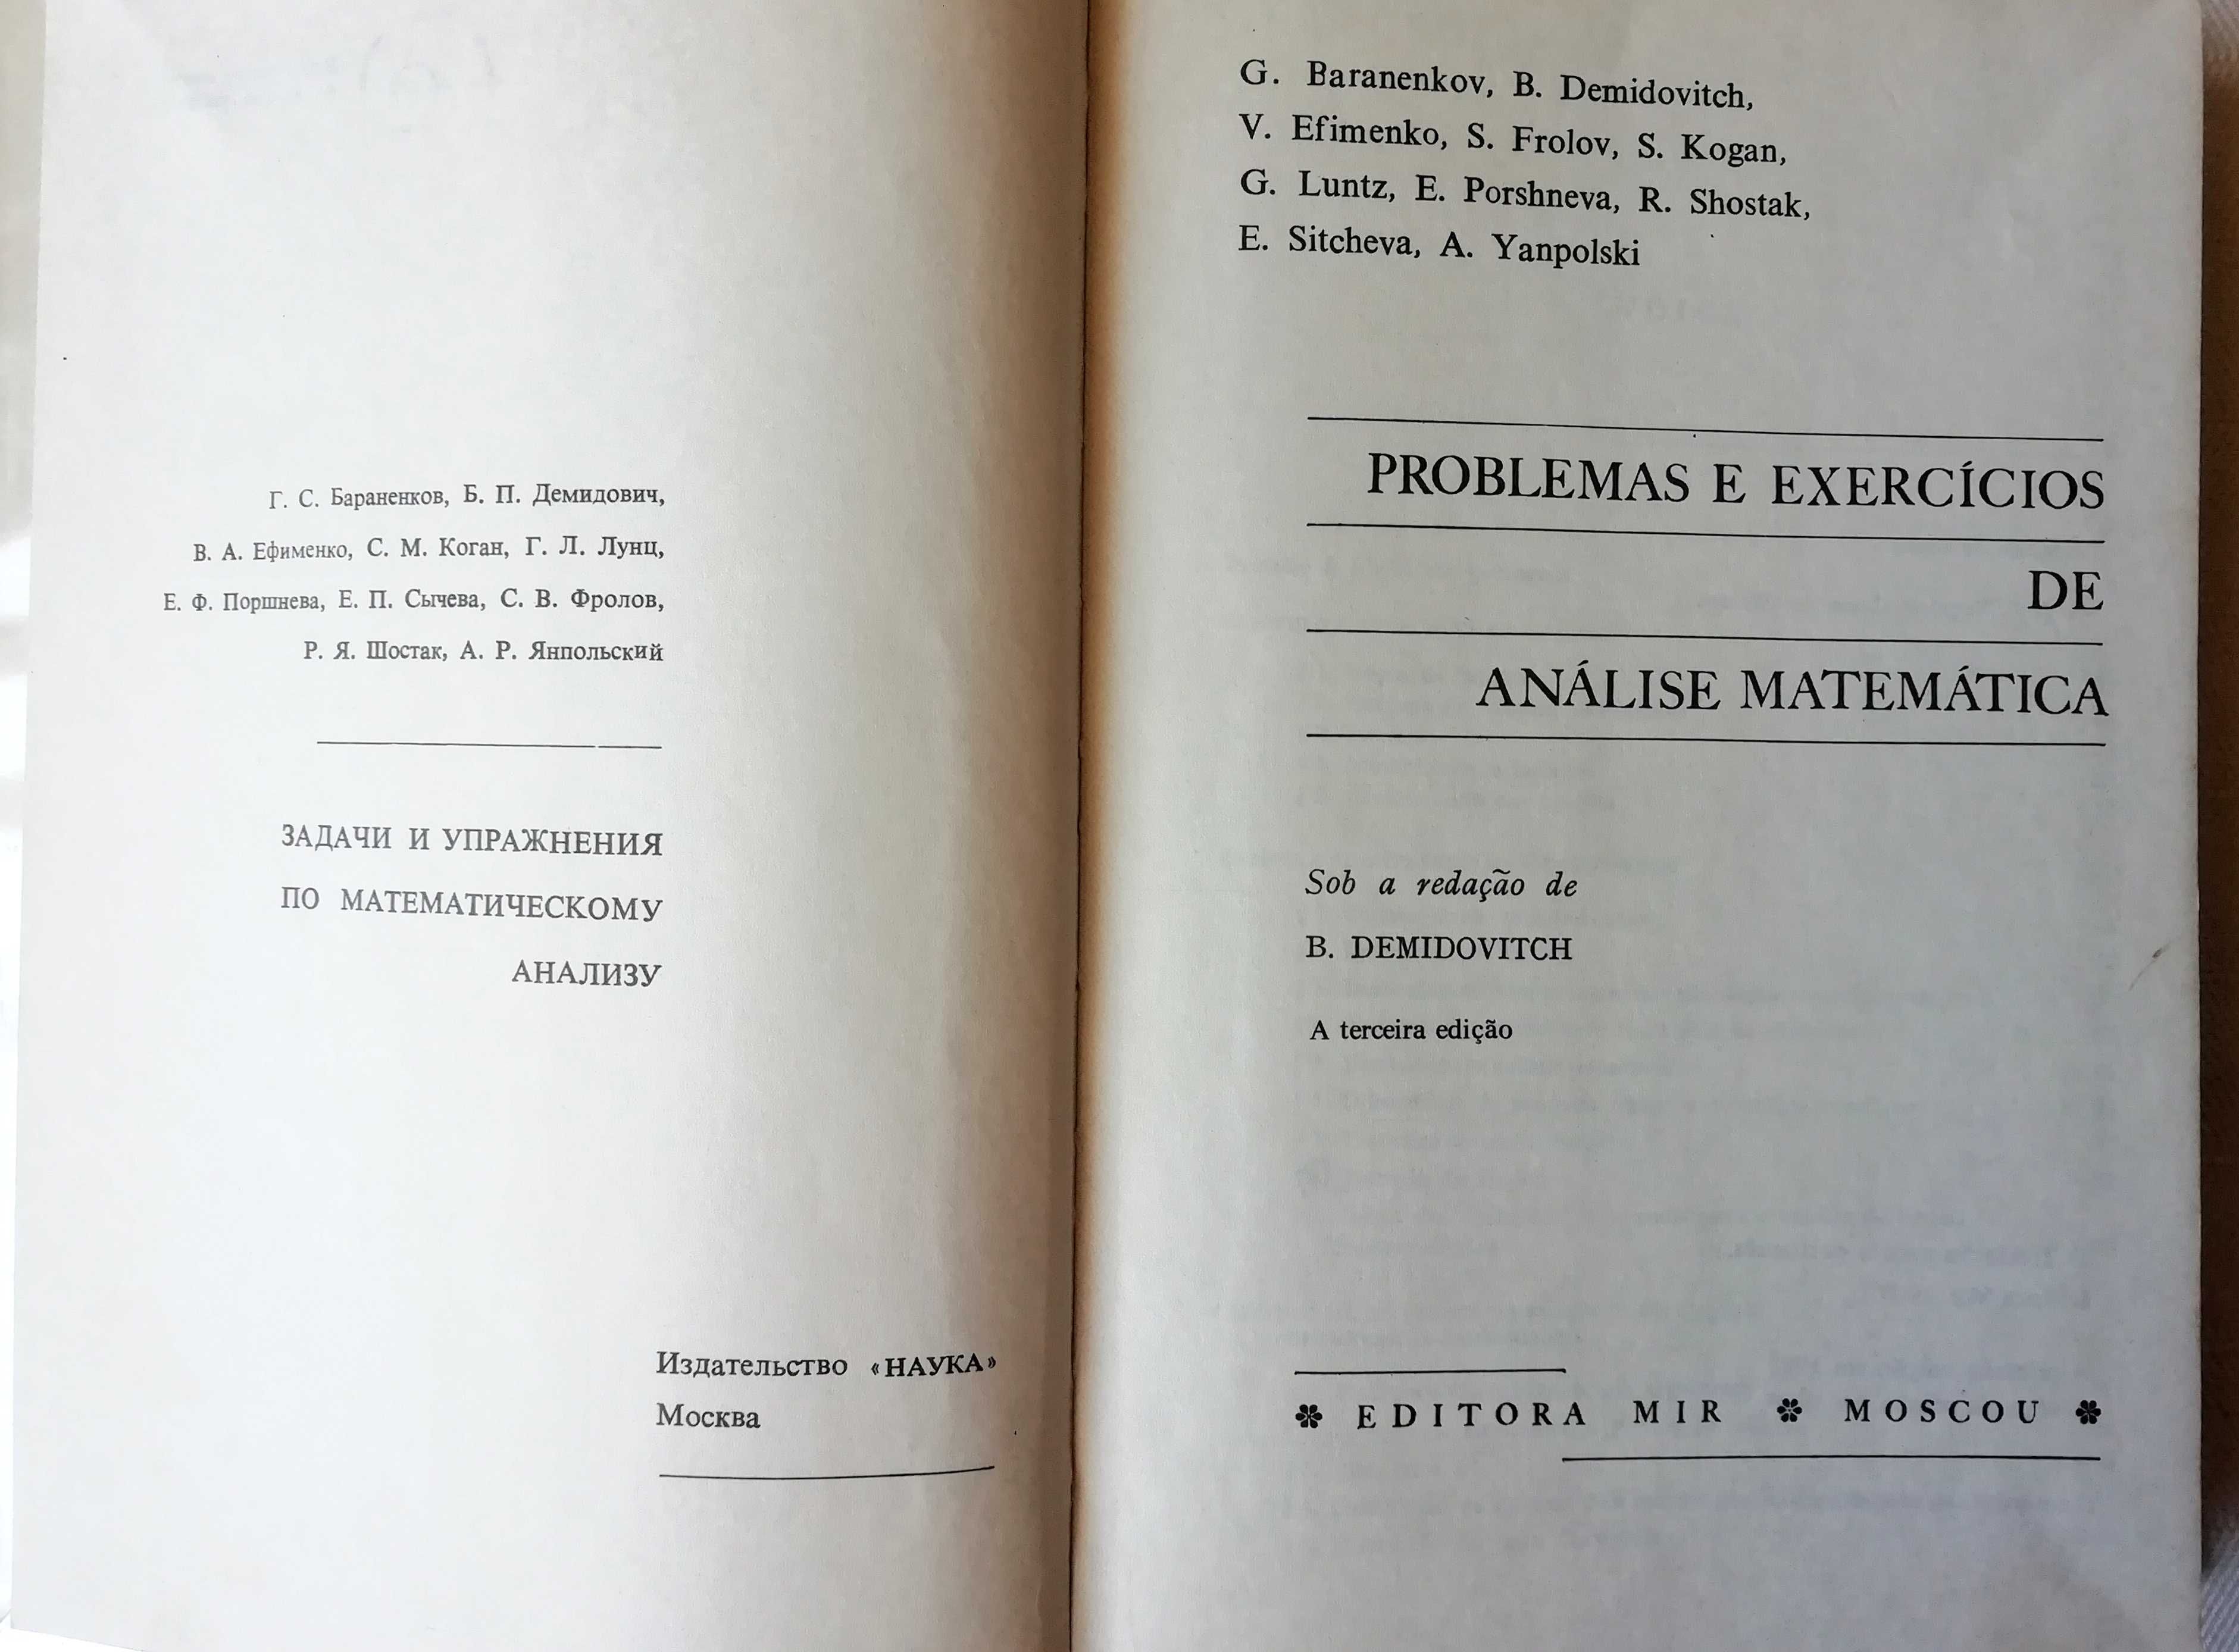 Problemas e Exercícios de Análise Matemática, B. Demidovitch